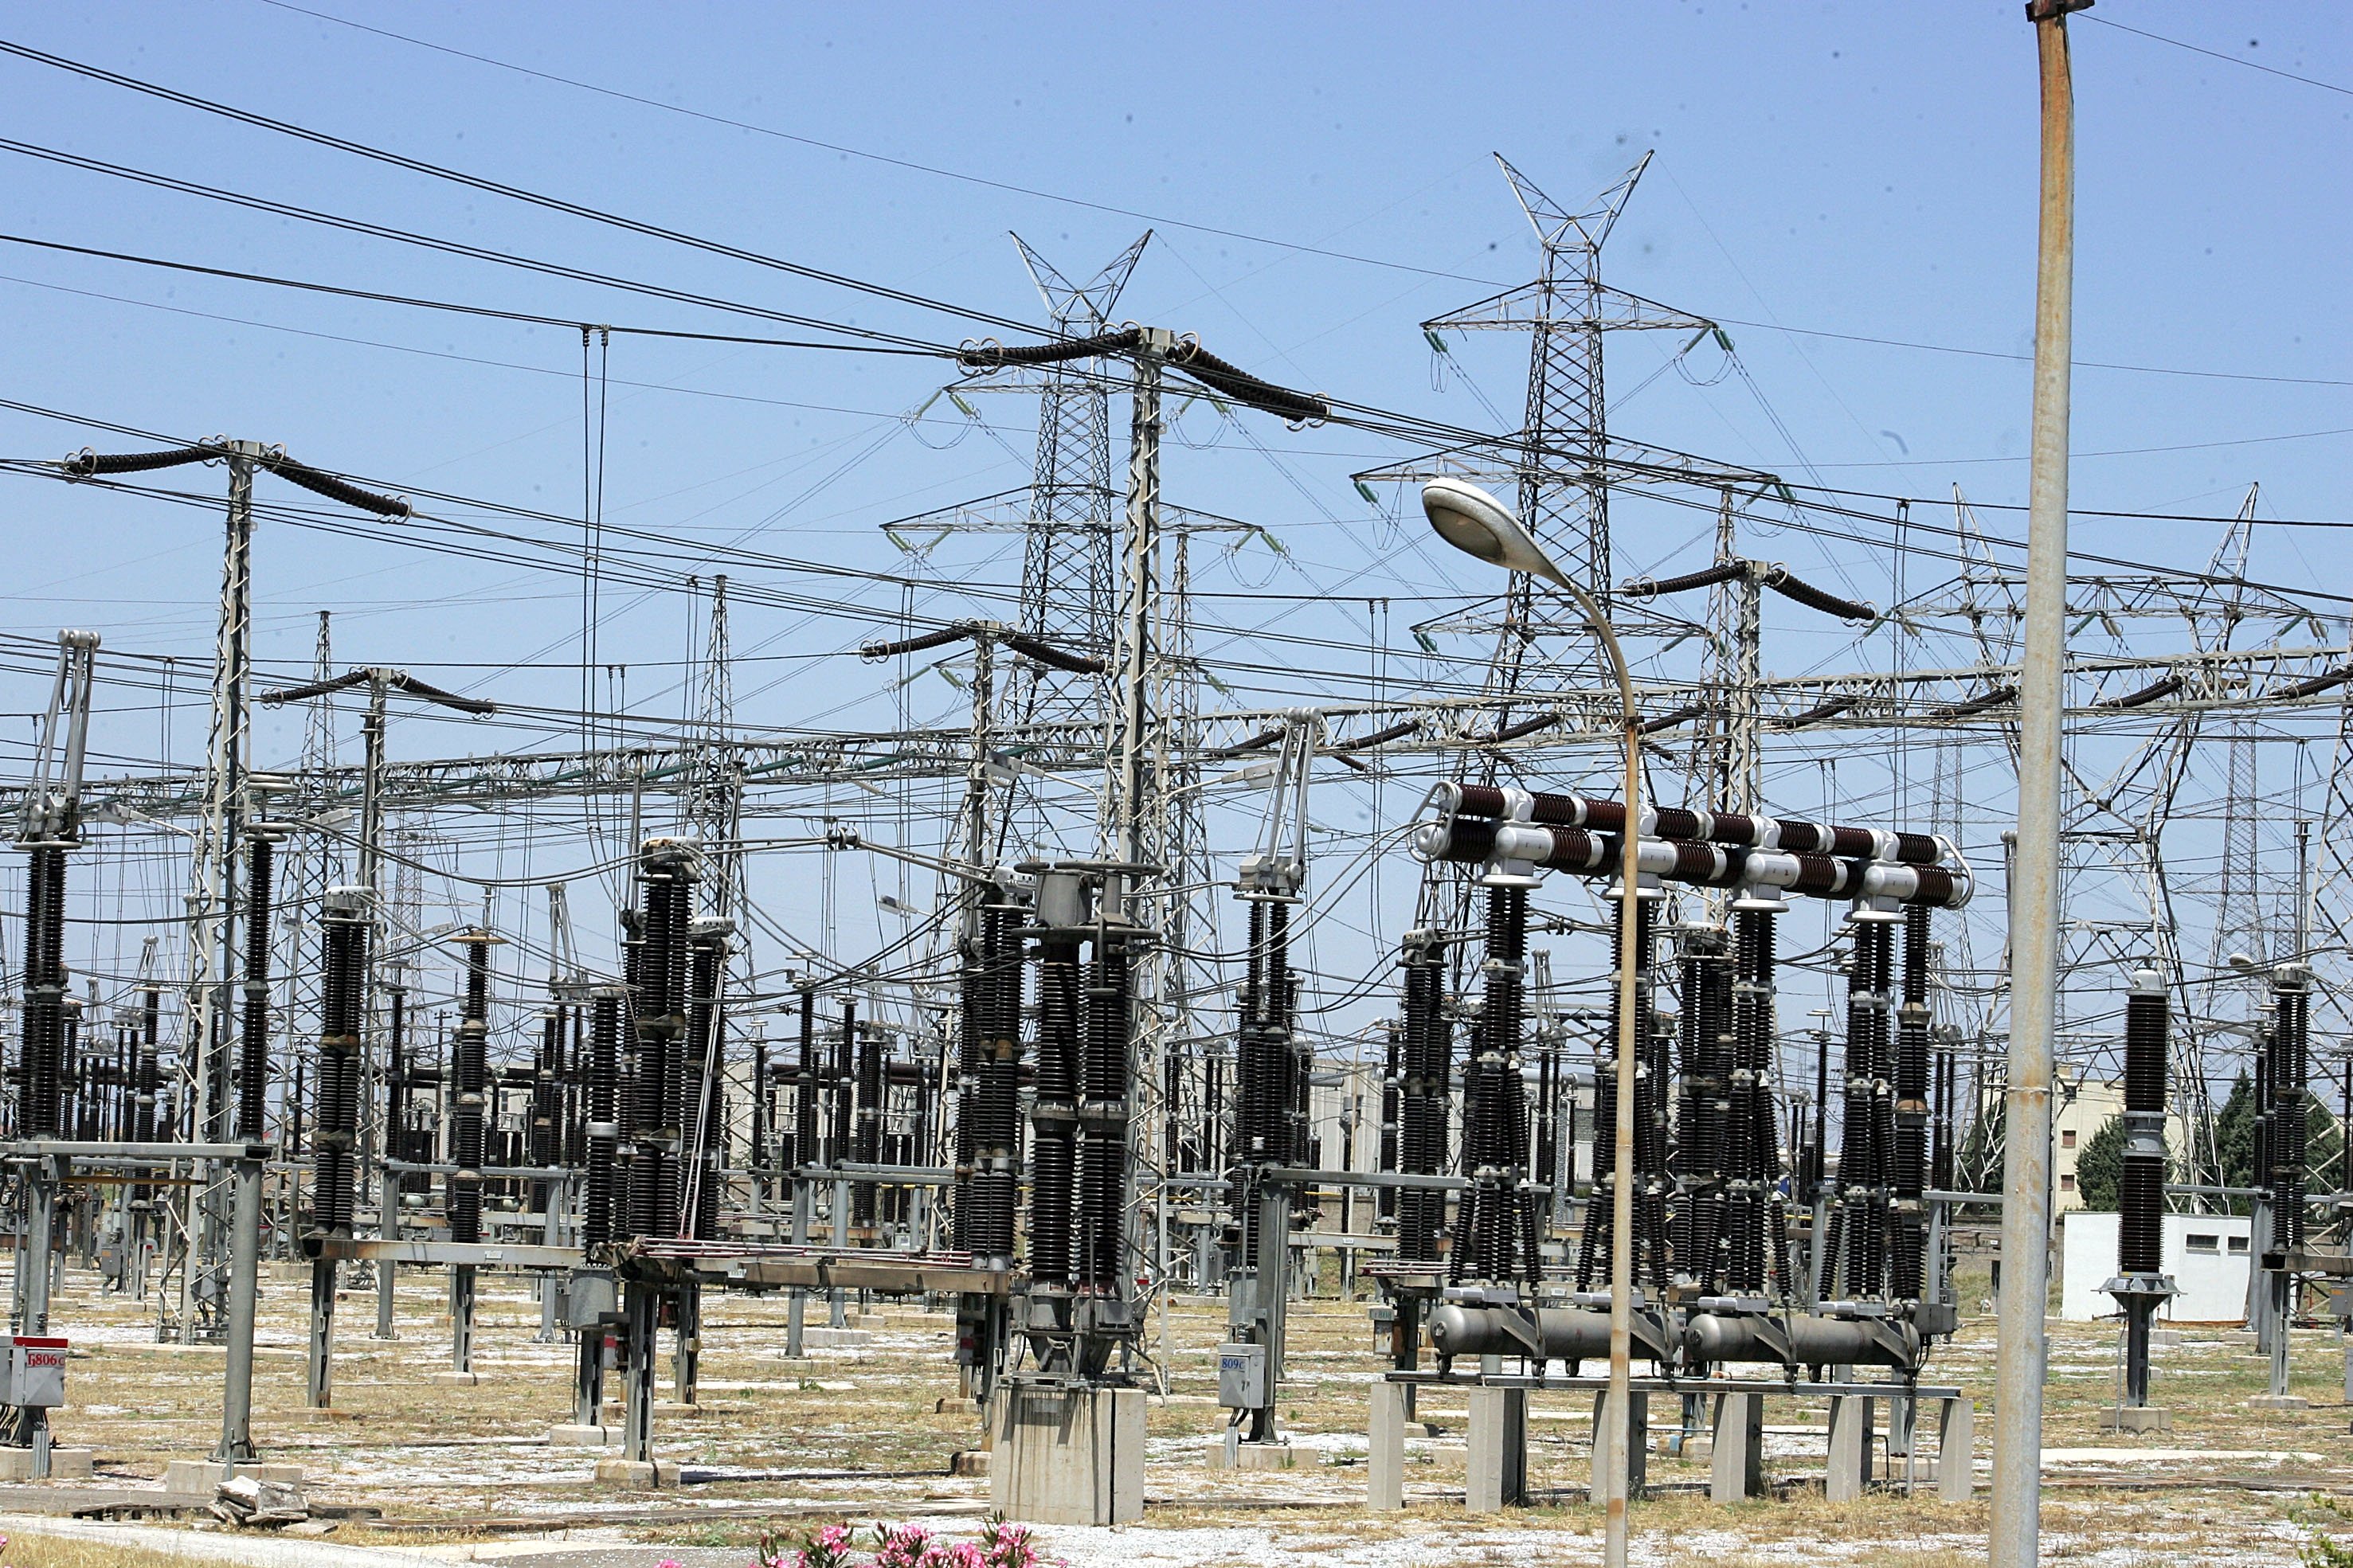 ΡΑΕ: Το σχέδιο για την αντιμετώπιση κρίσεων στην ηλεκτροπαραγωγή